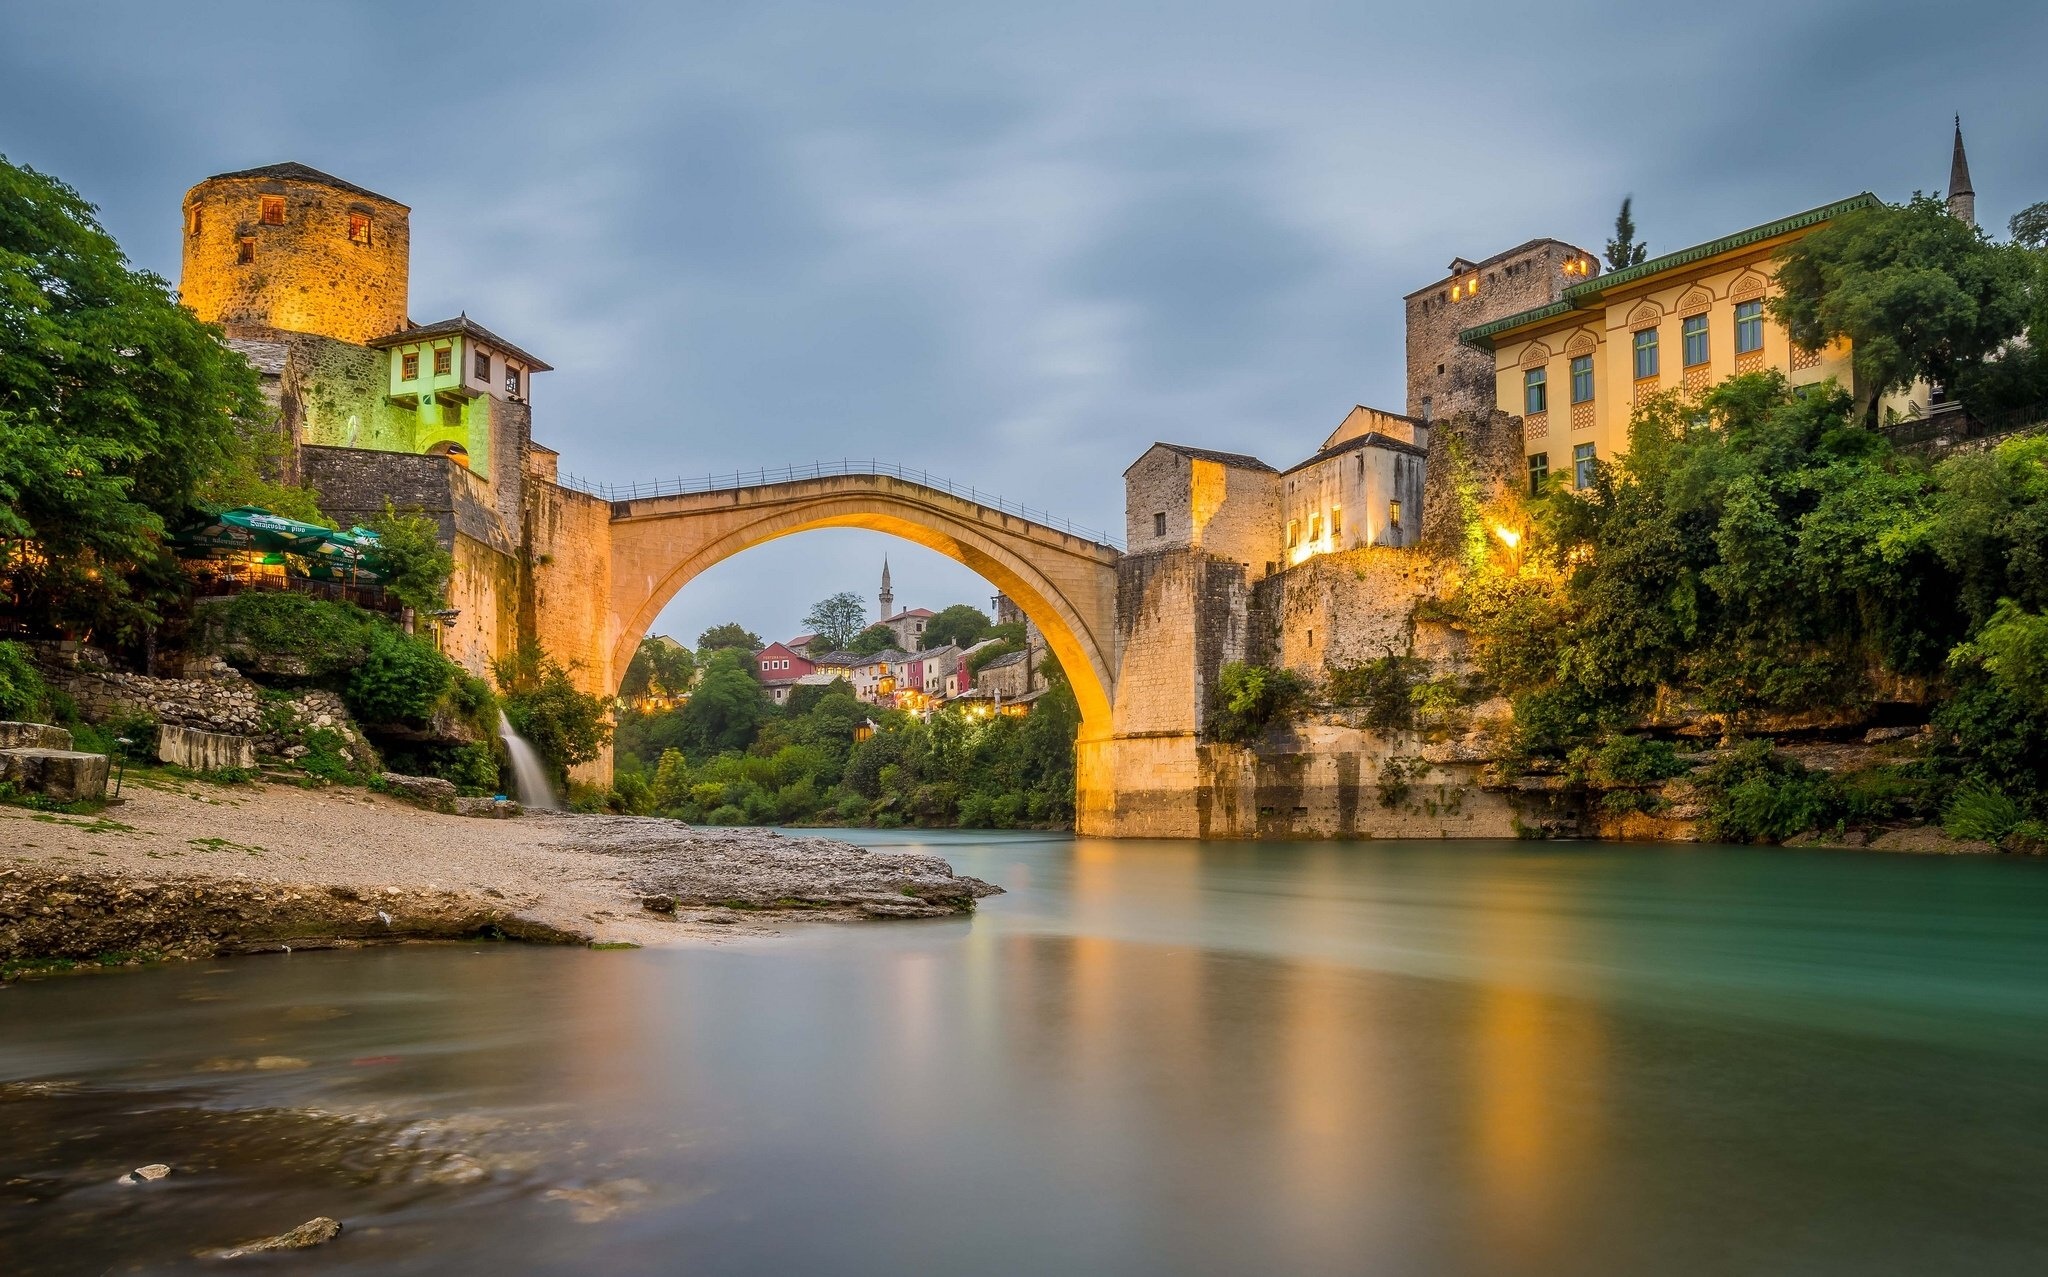 Iconic bridge, River scenery, Mostar beauty, HD wallpapers, 2050x1280 HD Desktop